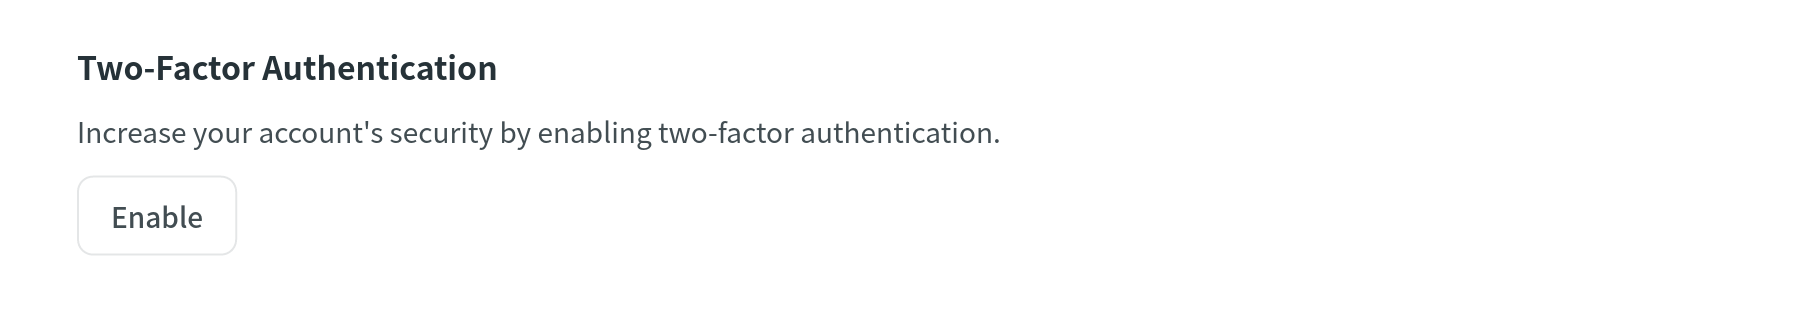 Zwei-Faktor-Authentifizierung